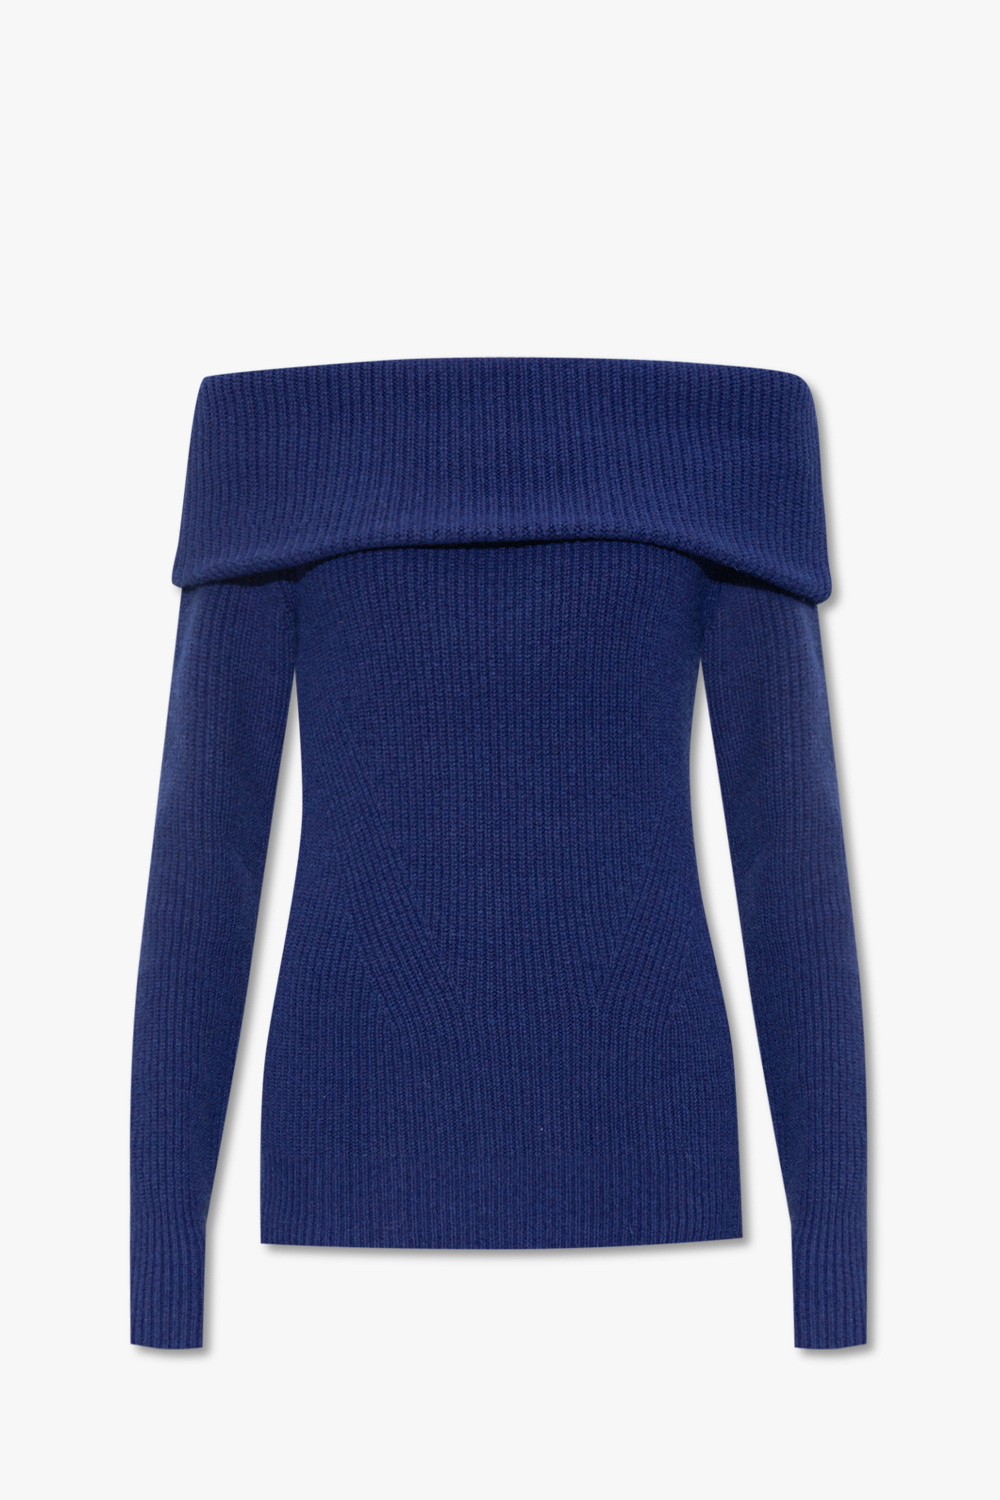 Louis Vuitton LV Coat Of Arms Sweater Dress - Vitkac shop online